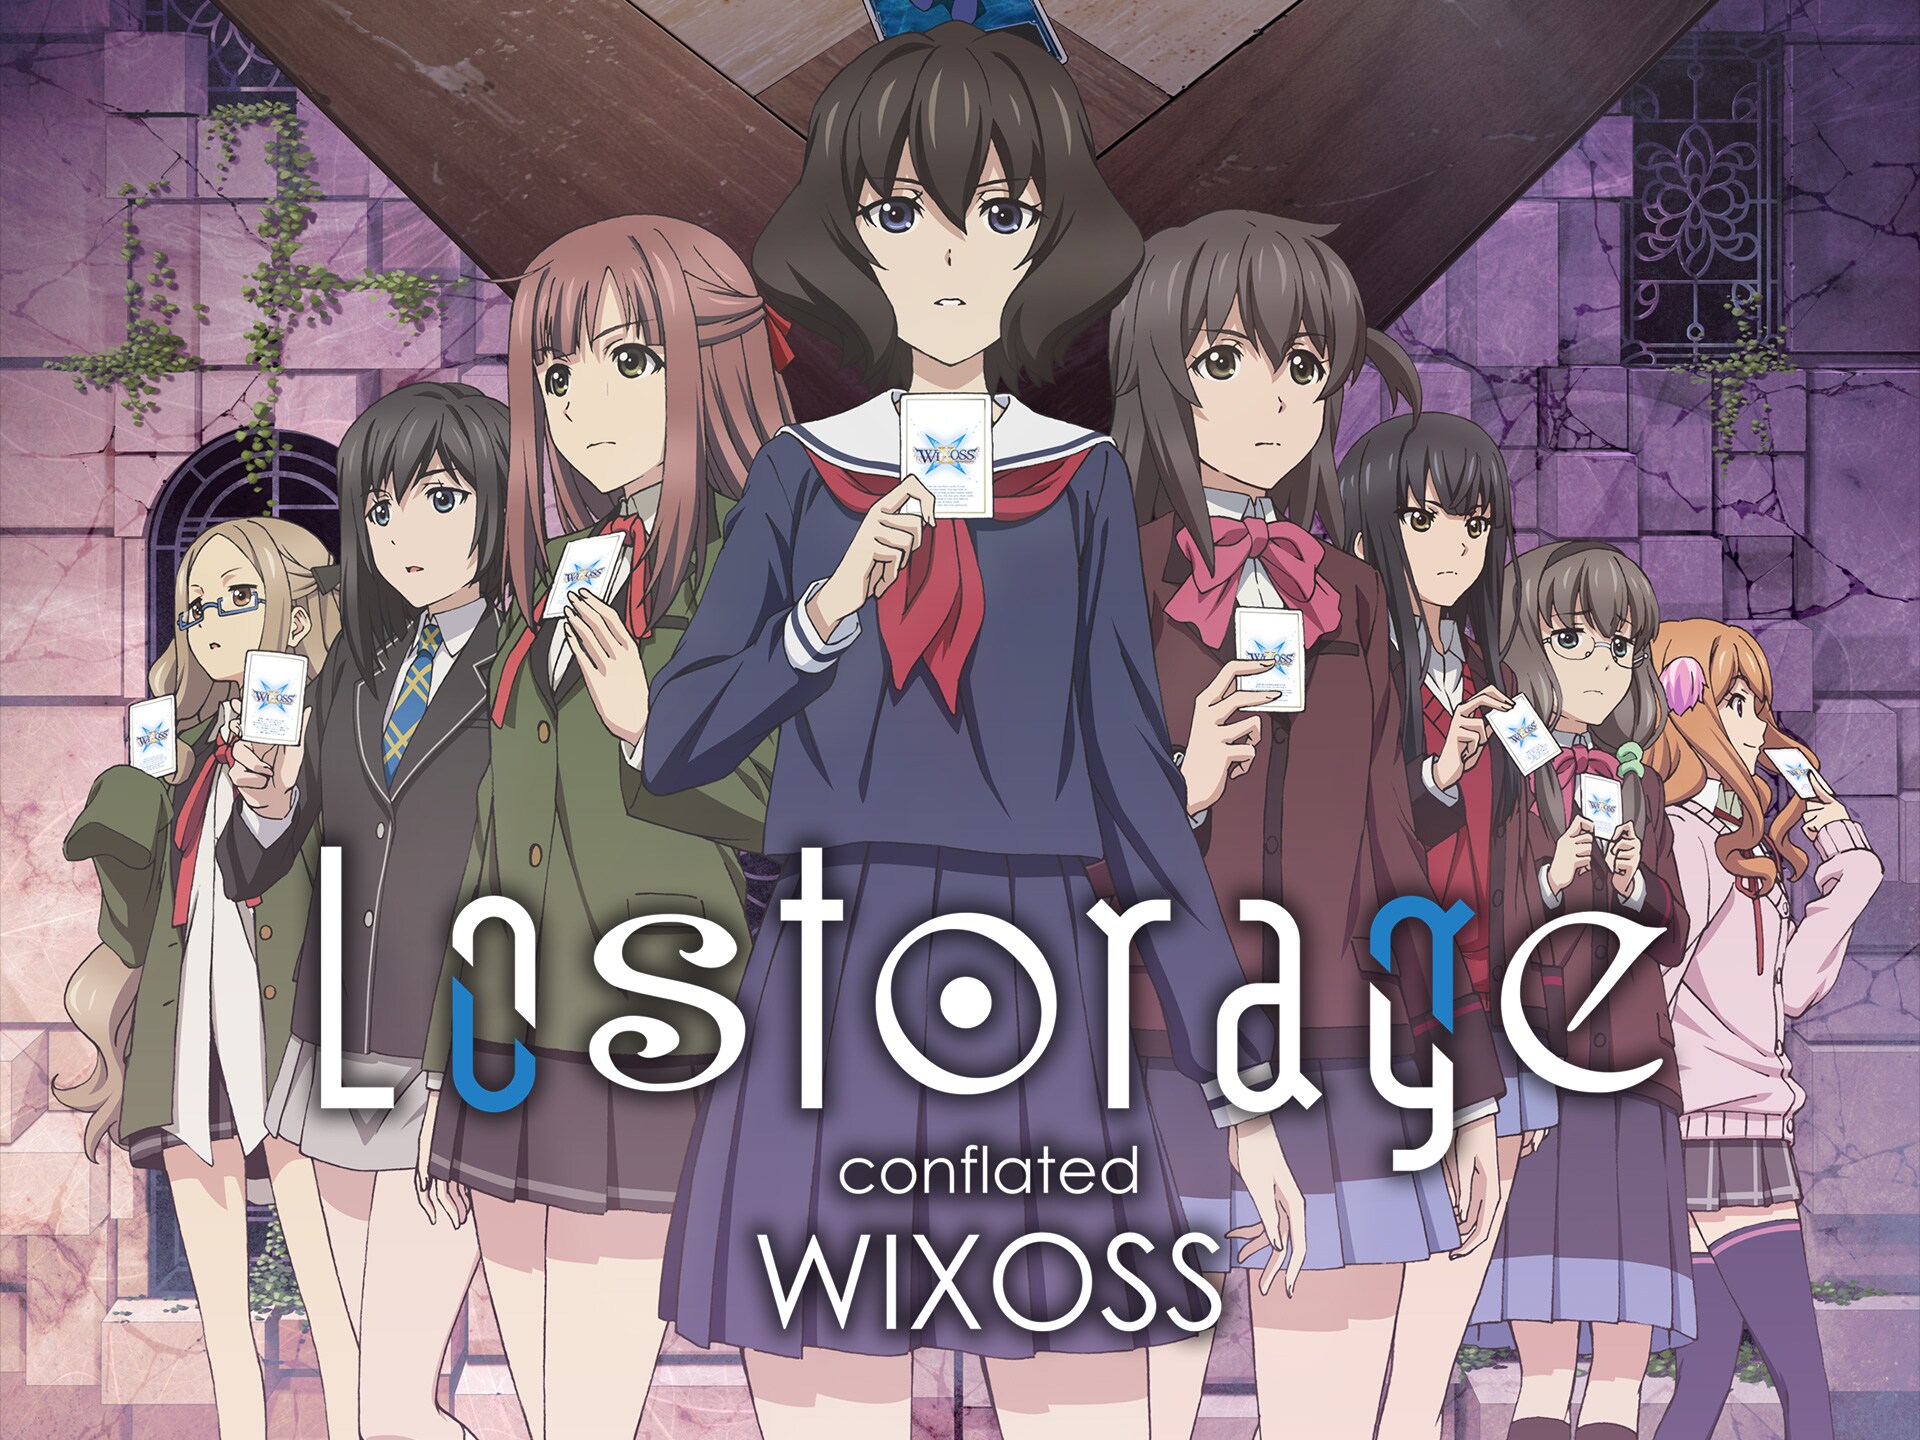 アニメ Lostorage Conflated Wixoss 第3話 始動 日常と非日常 フル動画 初月無料 動画配信サービスのビデオマーケット